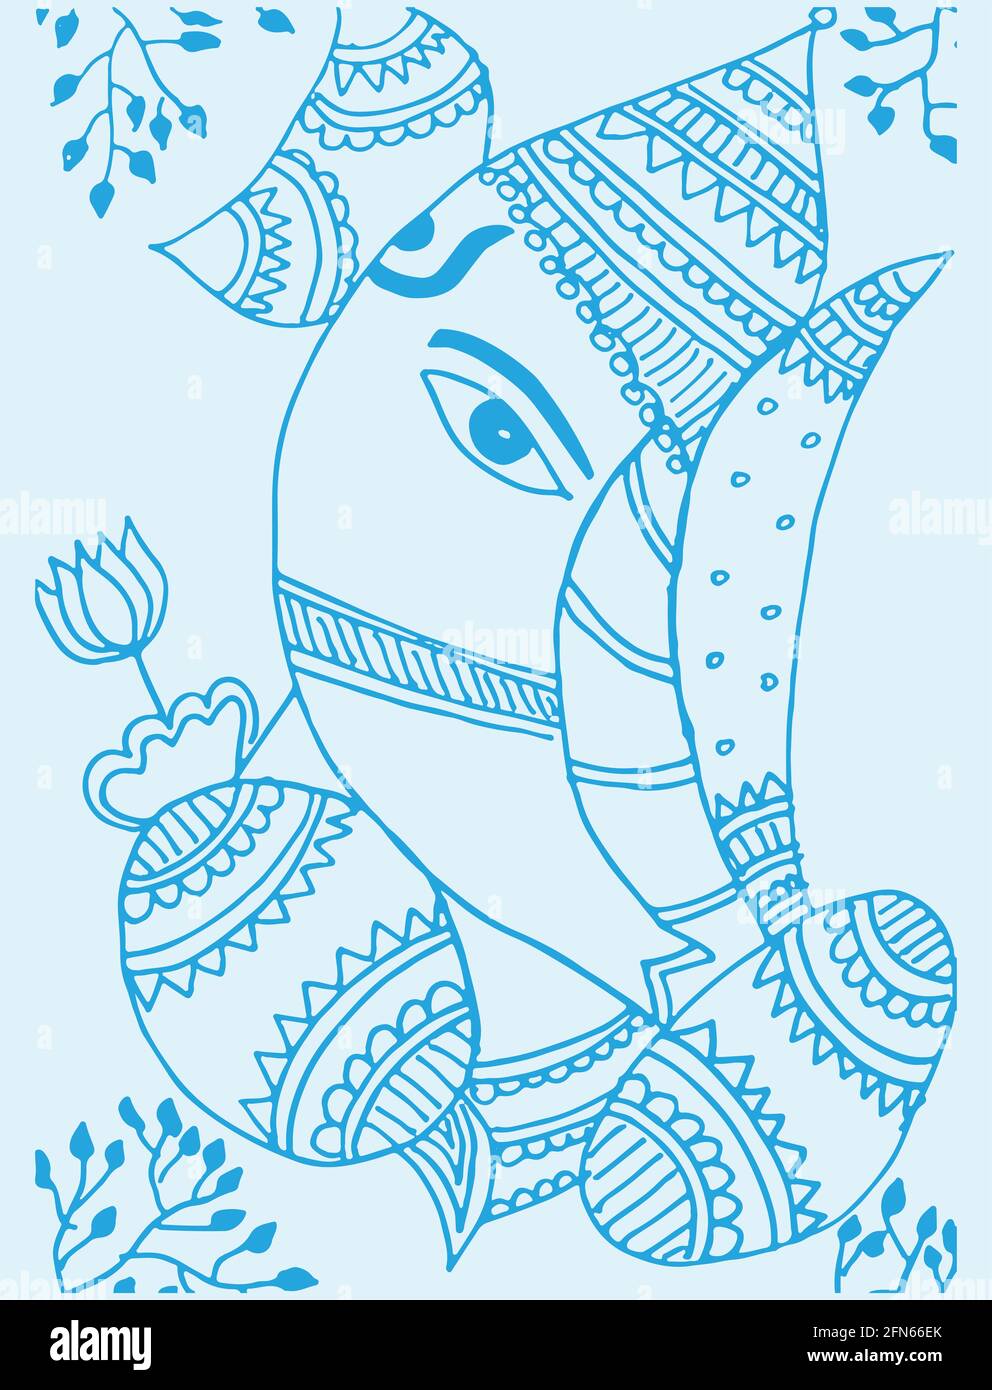 Lord Ganesha Pencil Sketch | Lord Ganesha Pencil Art | Lord Ganesha Drawing  Free Download Without Water Marks | Lord Vinayagar/Pillayar Pencil Sketch -  Gods Own Web